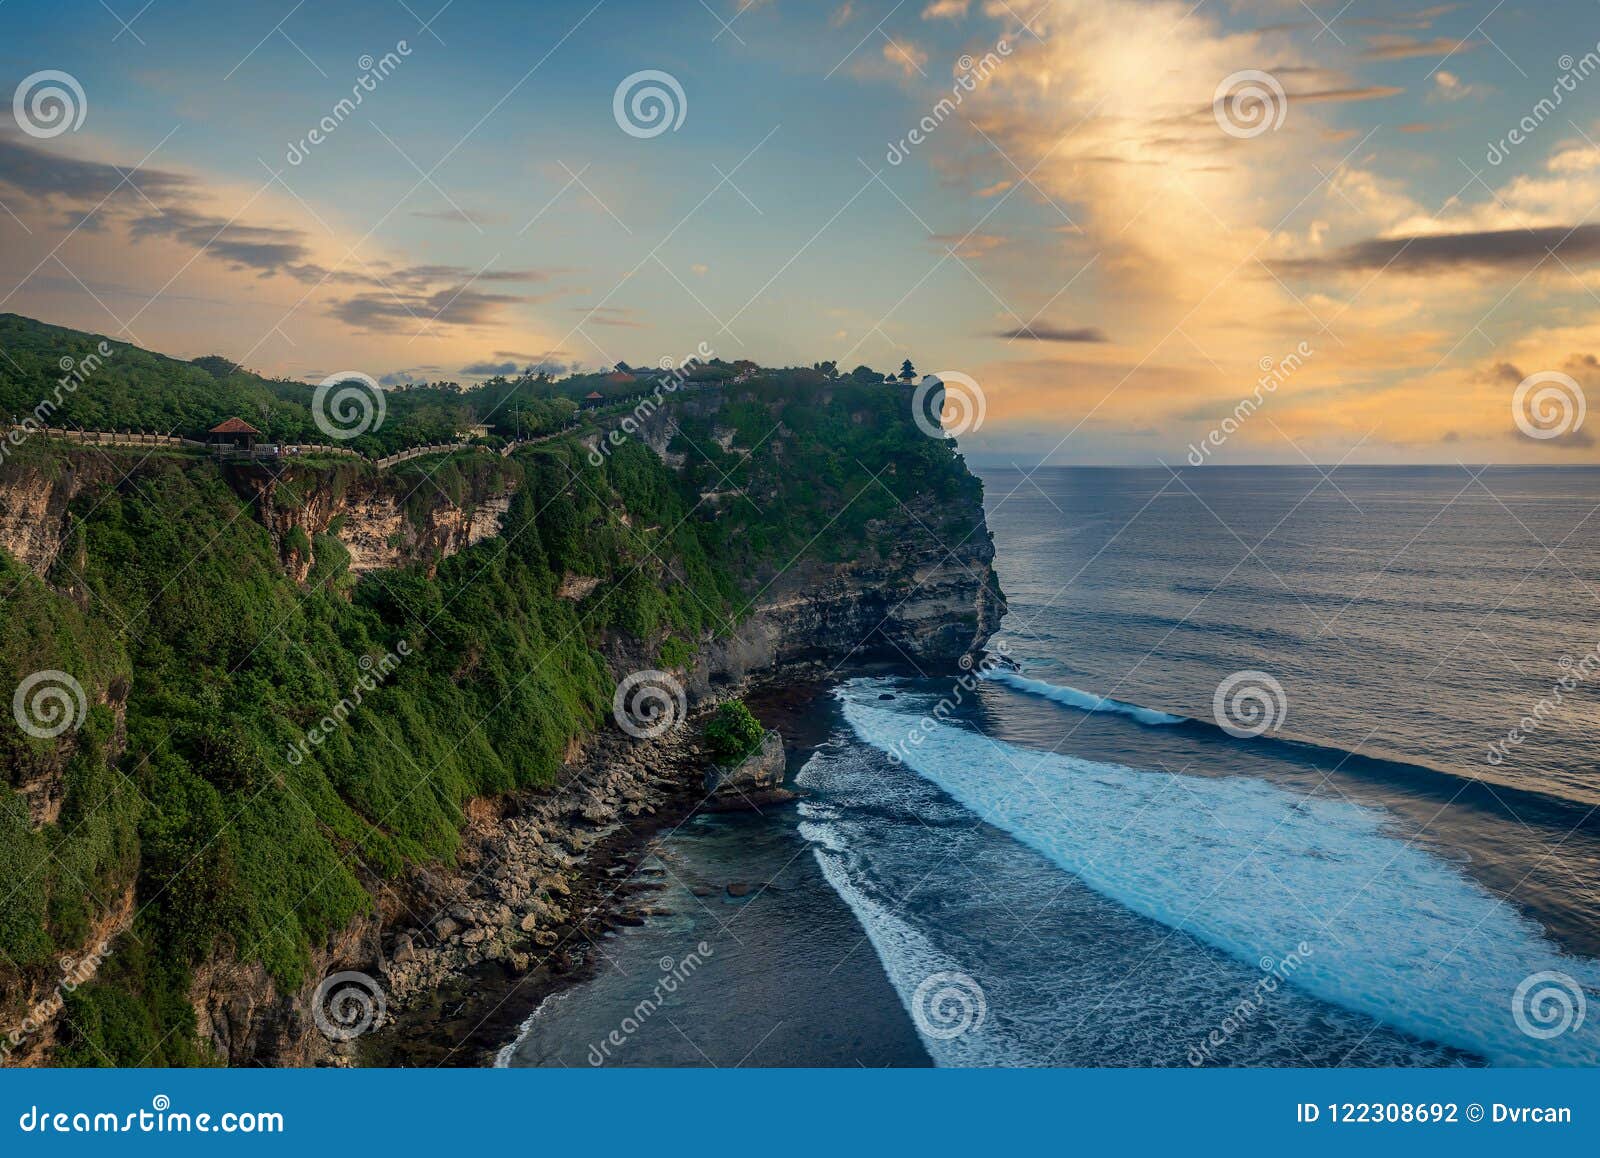 nusa dua uluwatu with beautiful cliffs and beaches in bali, indonesia